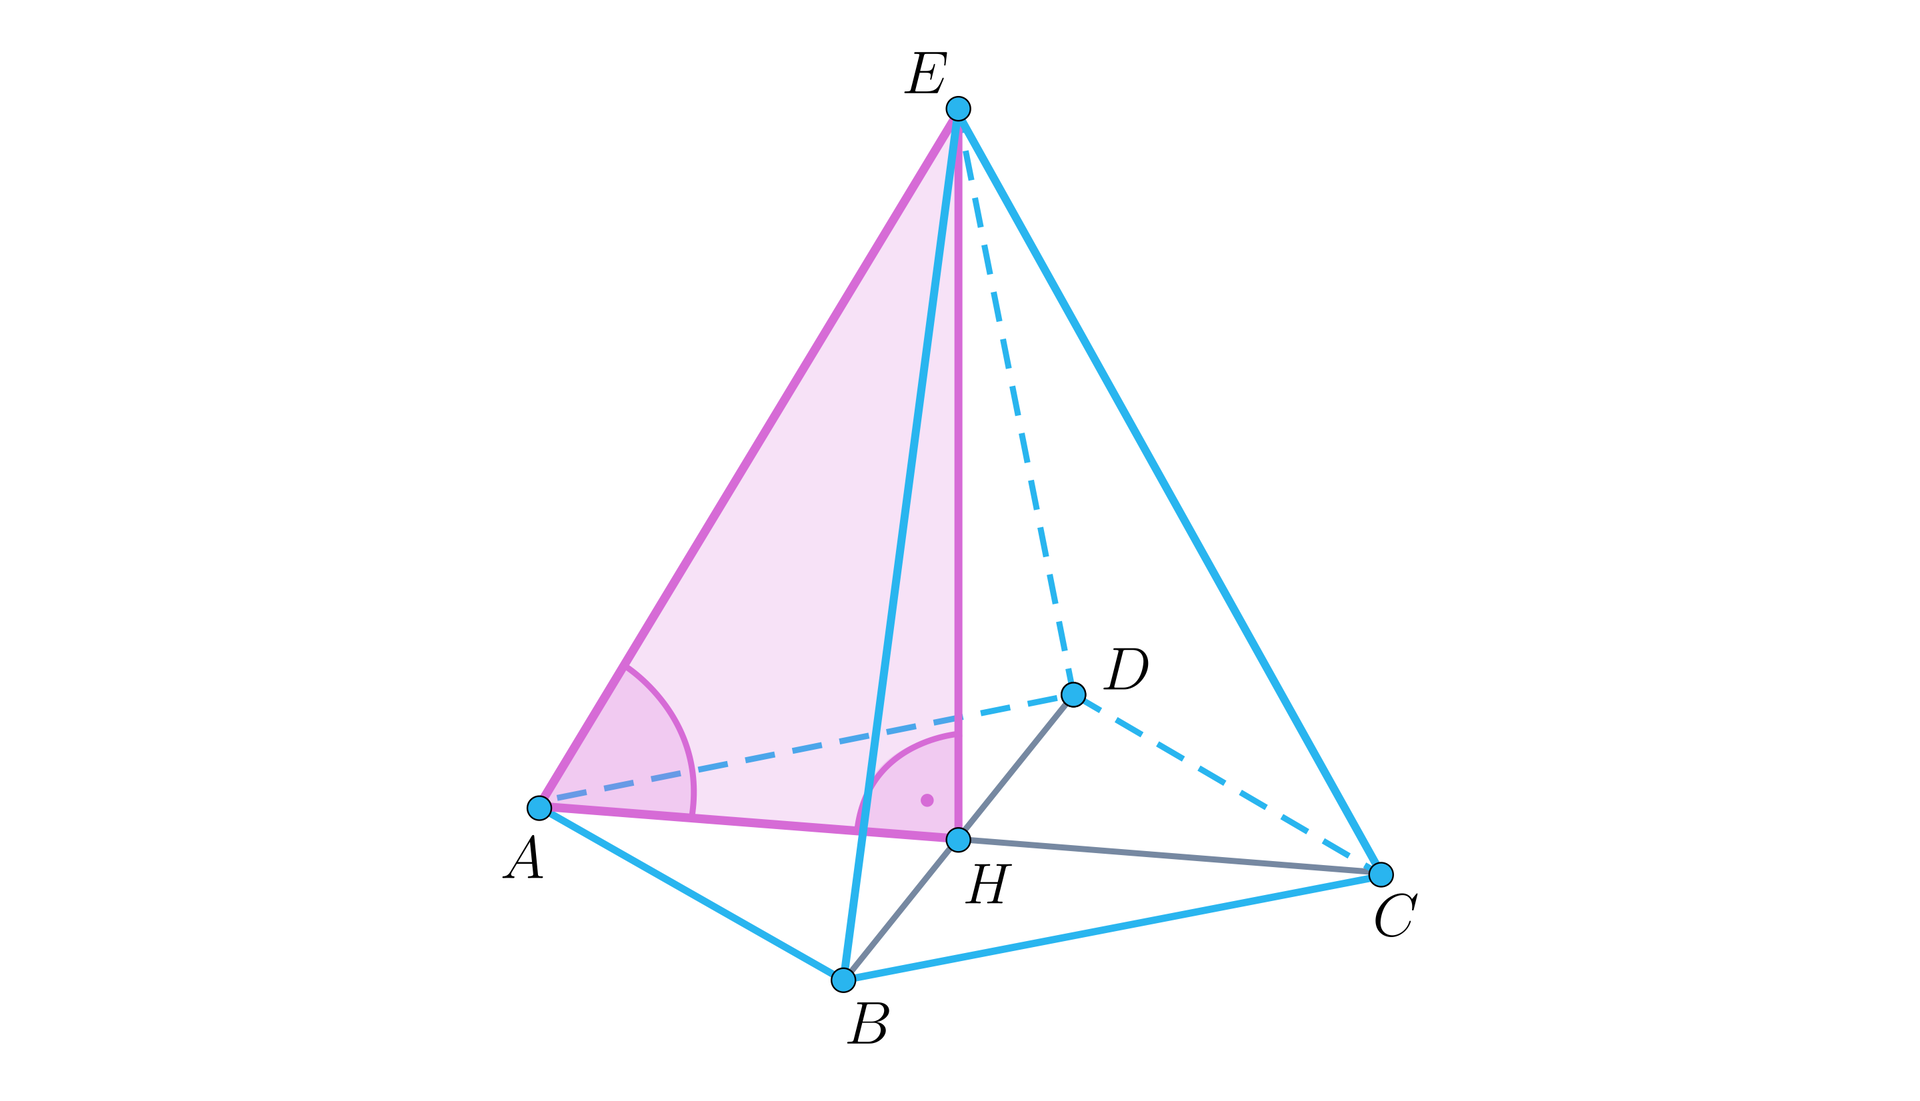 Rysunek przedstawia ostrosłup prawidłowy czworokątny o podstawie A B C D i wierzchołku E. Z wierzchołka upuszczona jest wysokość. Na rysunku oznaczone są również przekątna podstawy A C oraz B D. Ich punkt przecięcia jest oznaczony jako H. Jest to też dolny koniec wysokości. Zaznaczone kąty: kąt prosty między wysokością a przekątną A C oraz kąt nachylenia krawędzi A E do przekątnej A C. Różowym kolorem oznaczony jest trójkąt prostokątny A H E będący połową przekroju ostrosłupa względem przekątnej A C.